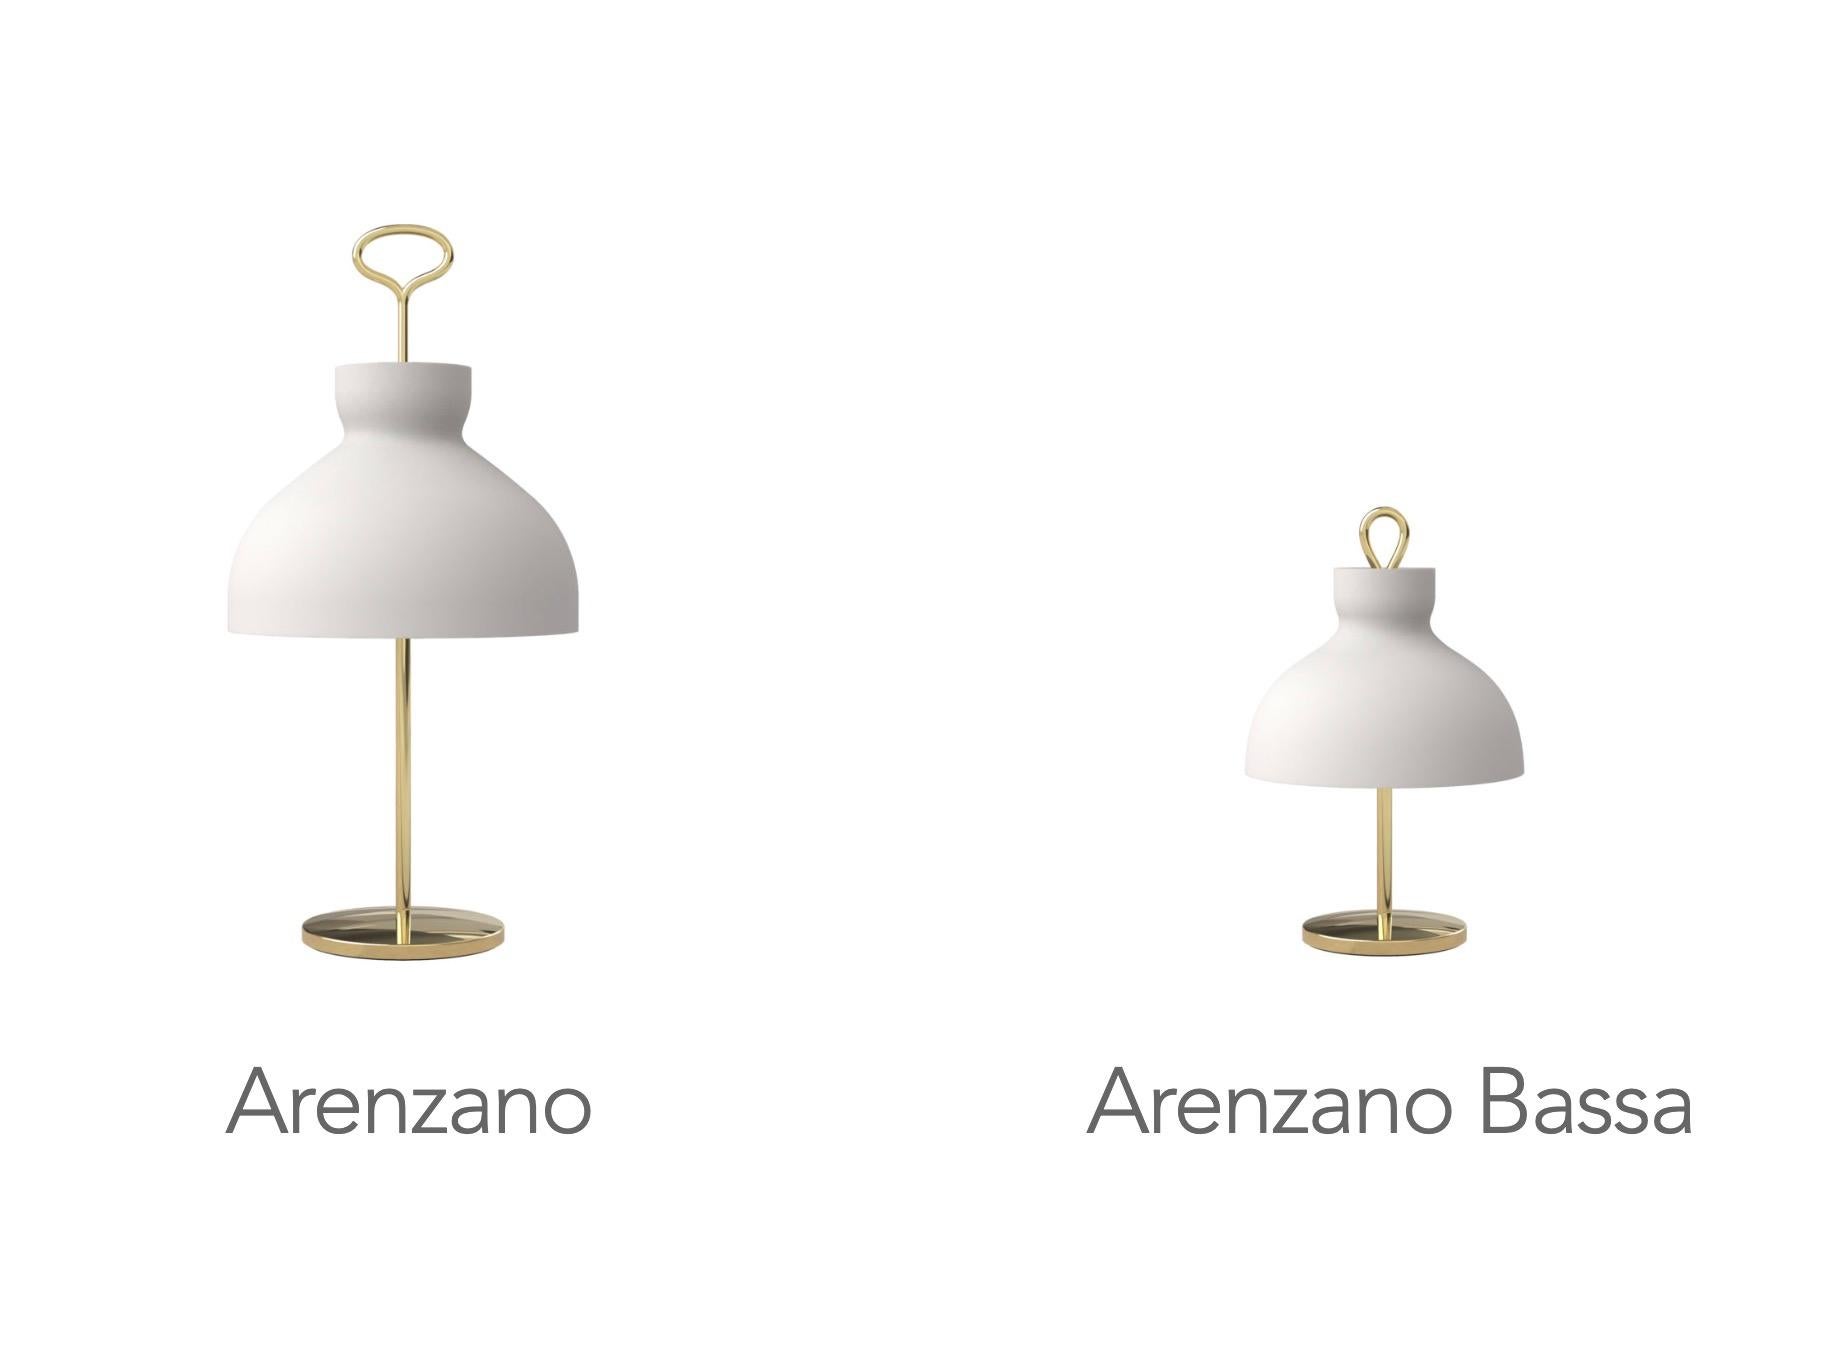 Ignazio Gardella 'Arenzano Bassa' Table Lamp in Glass and Satin Bronze For Sale 5